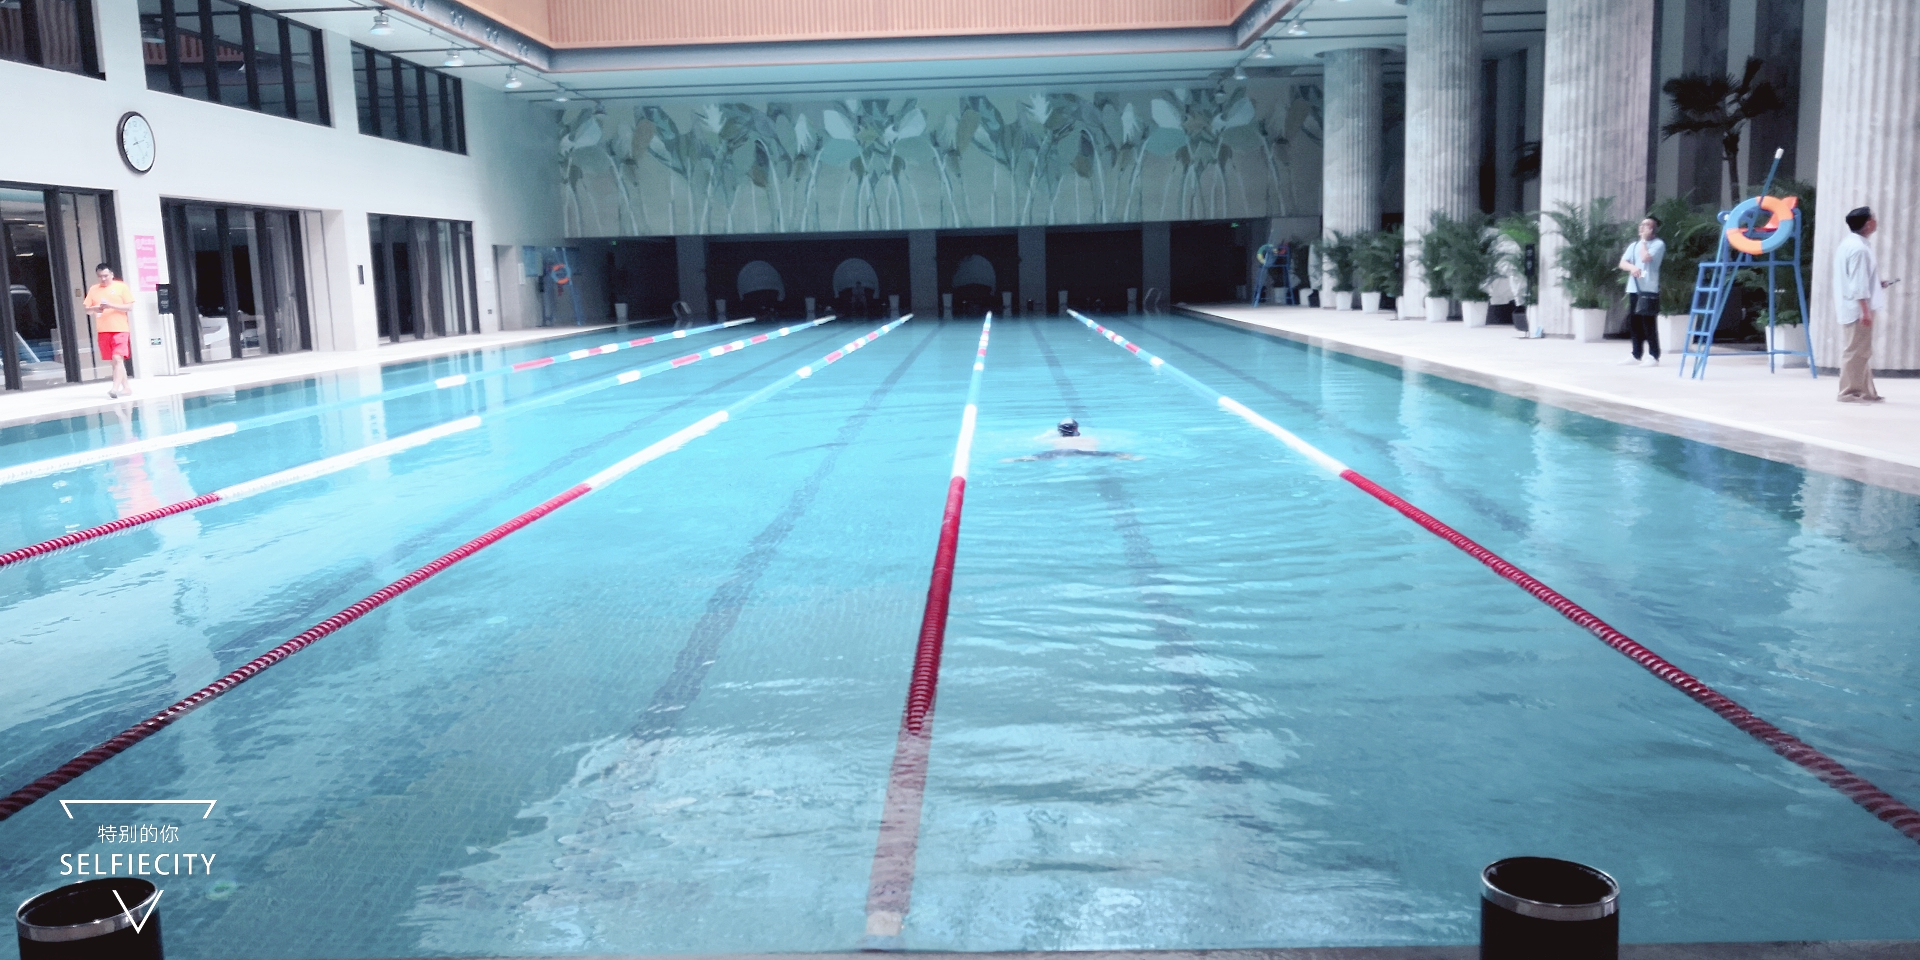 游泳池设计 游泳池设备 游泳池工程 游泳池安装